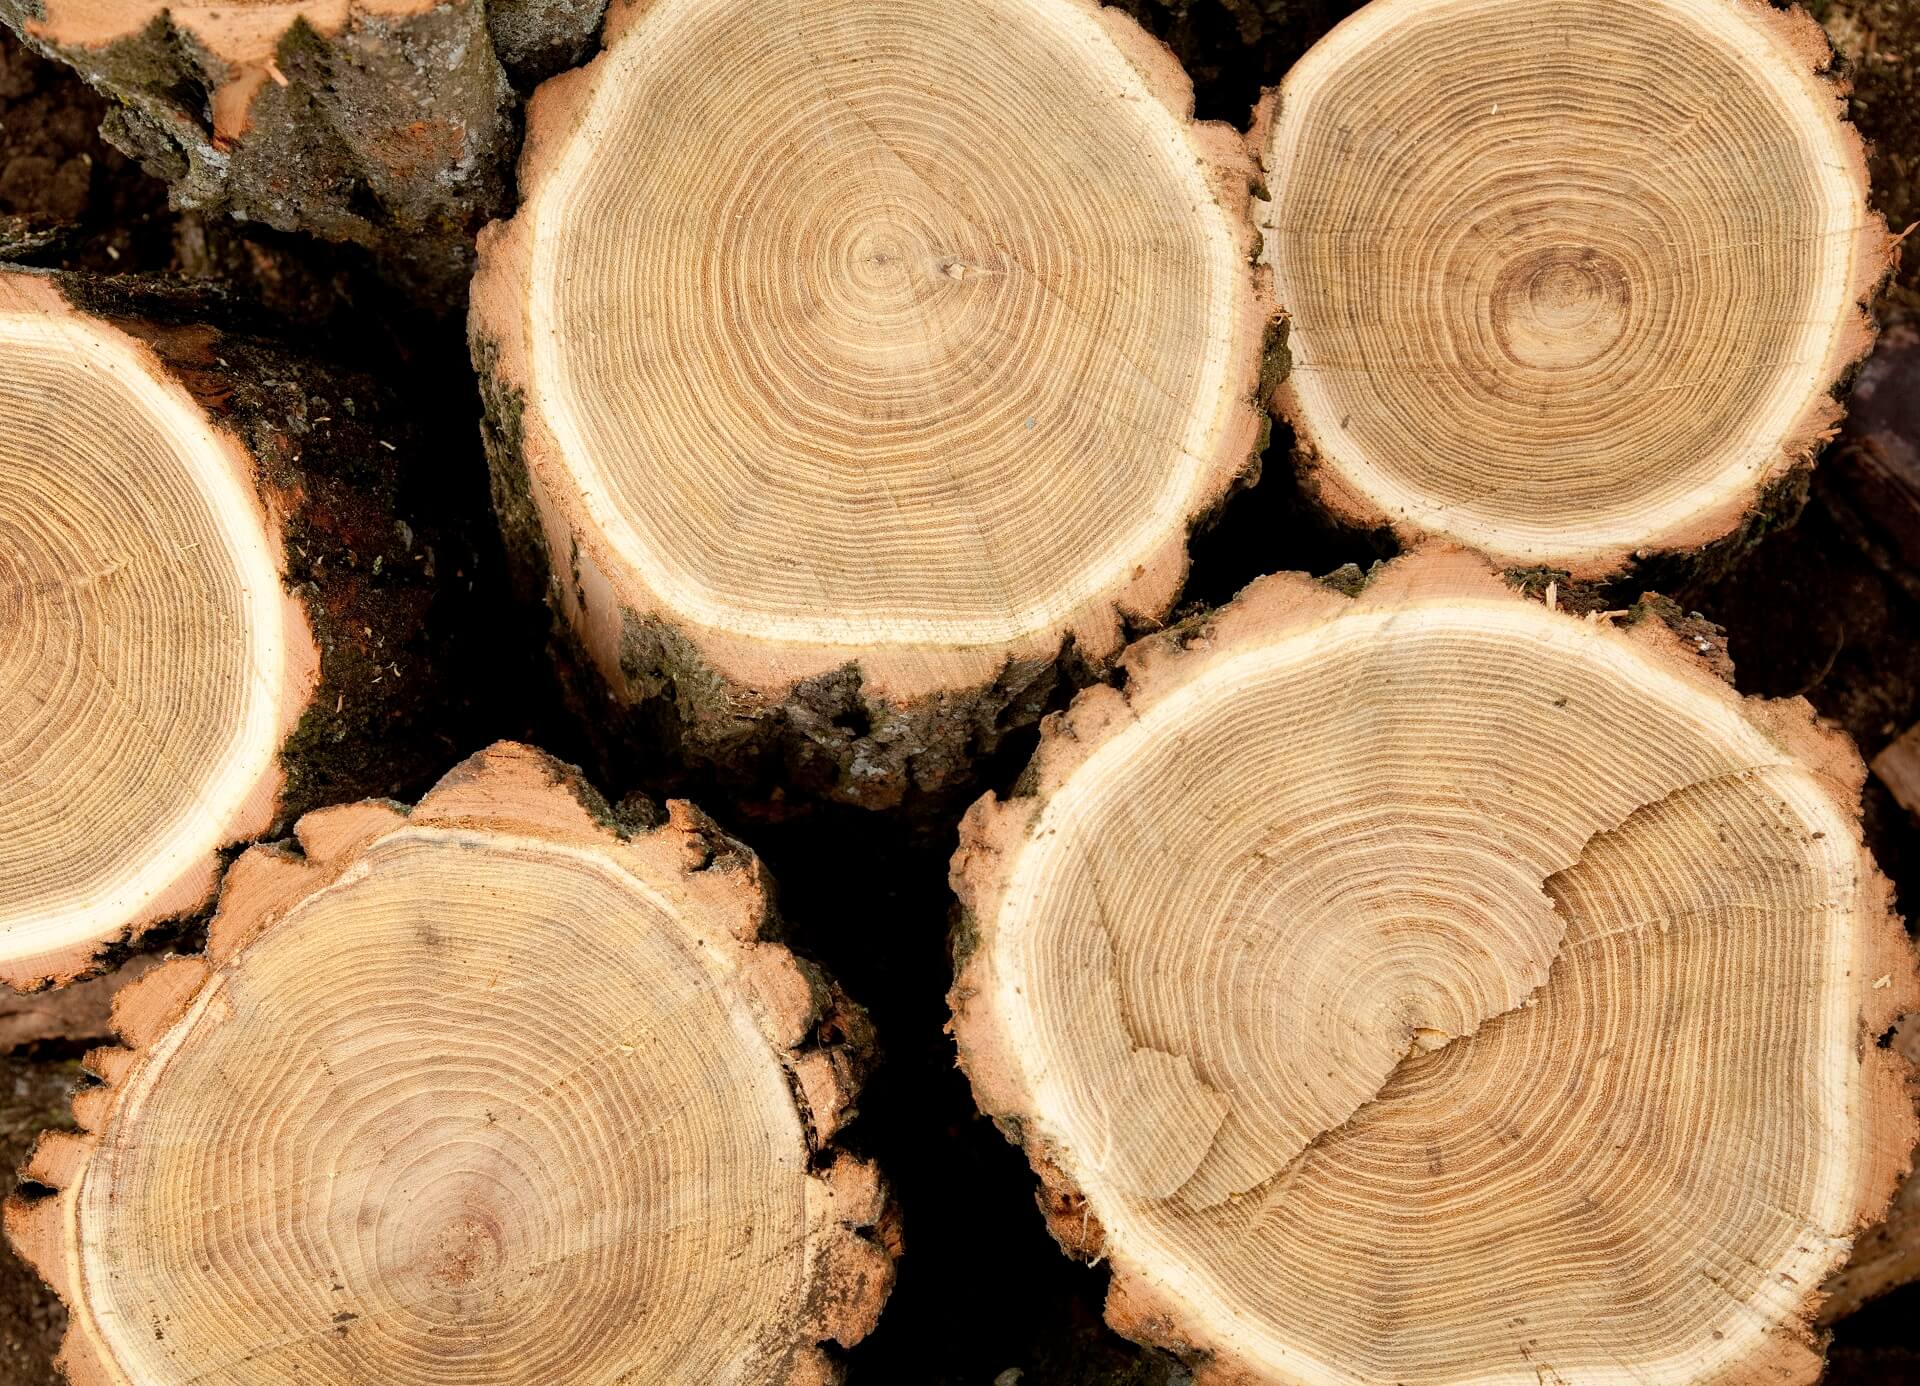 Ein Bild, das Bäume nach der Säge zeigt, das natürliche Rohmaterial für den Bau eines Holzhauses. Erfahren Sie mehr über die Auswahl und Verarbeitung dieser wertvollen Holzkomponenten, die die Grundlage für langlebige und ästhetisch ansprechende Holzhäuser bilden.